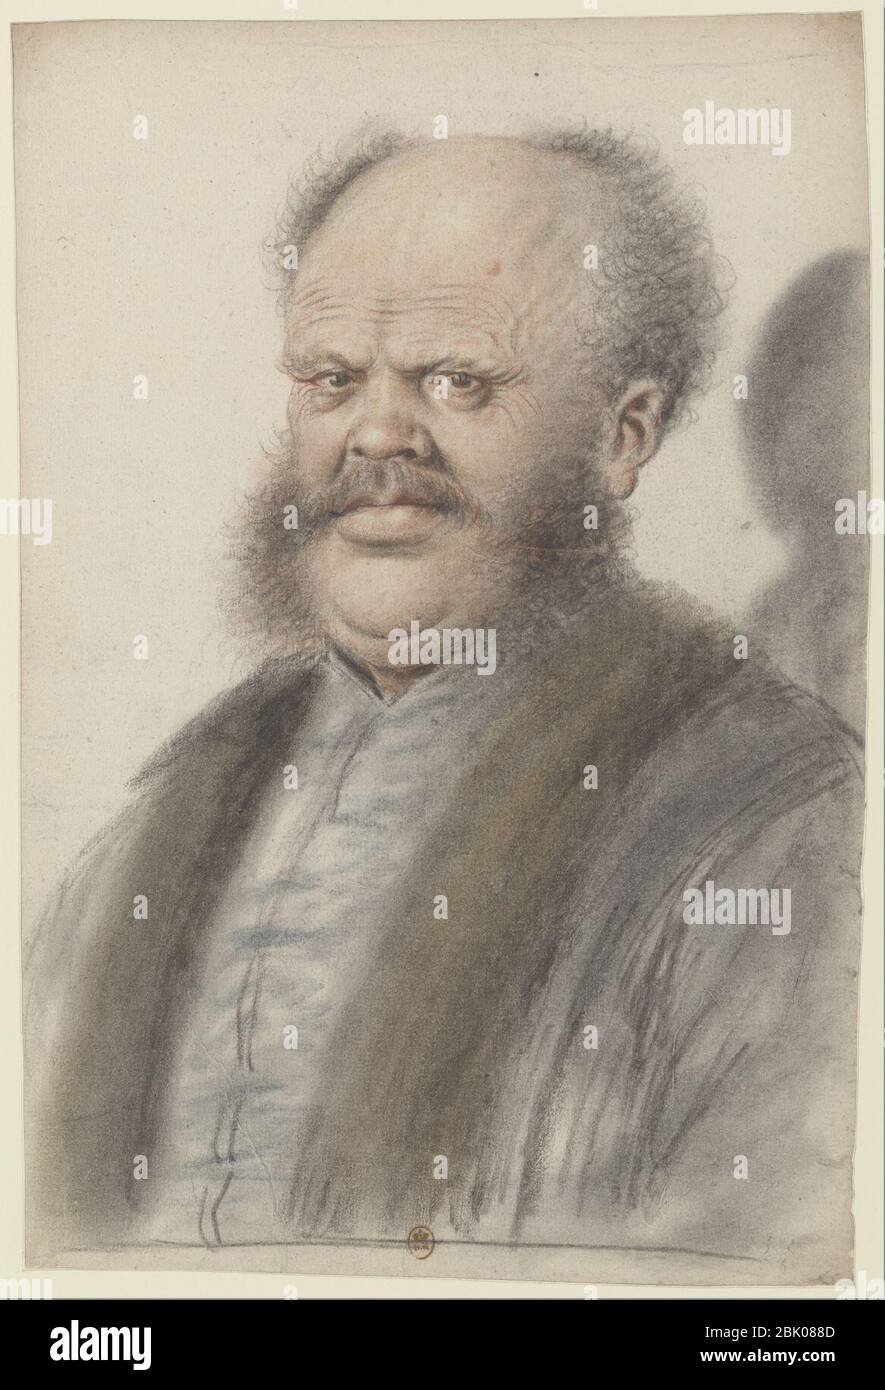 Homme au crâne dégarni, portant moustaches et larges pattes de cheveux descendant sur les joues, vu presque de face (Nicolas Lagneau). Stock Photo